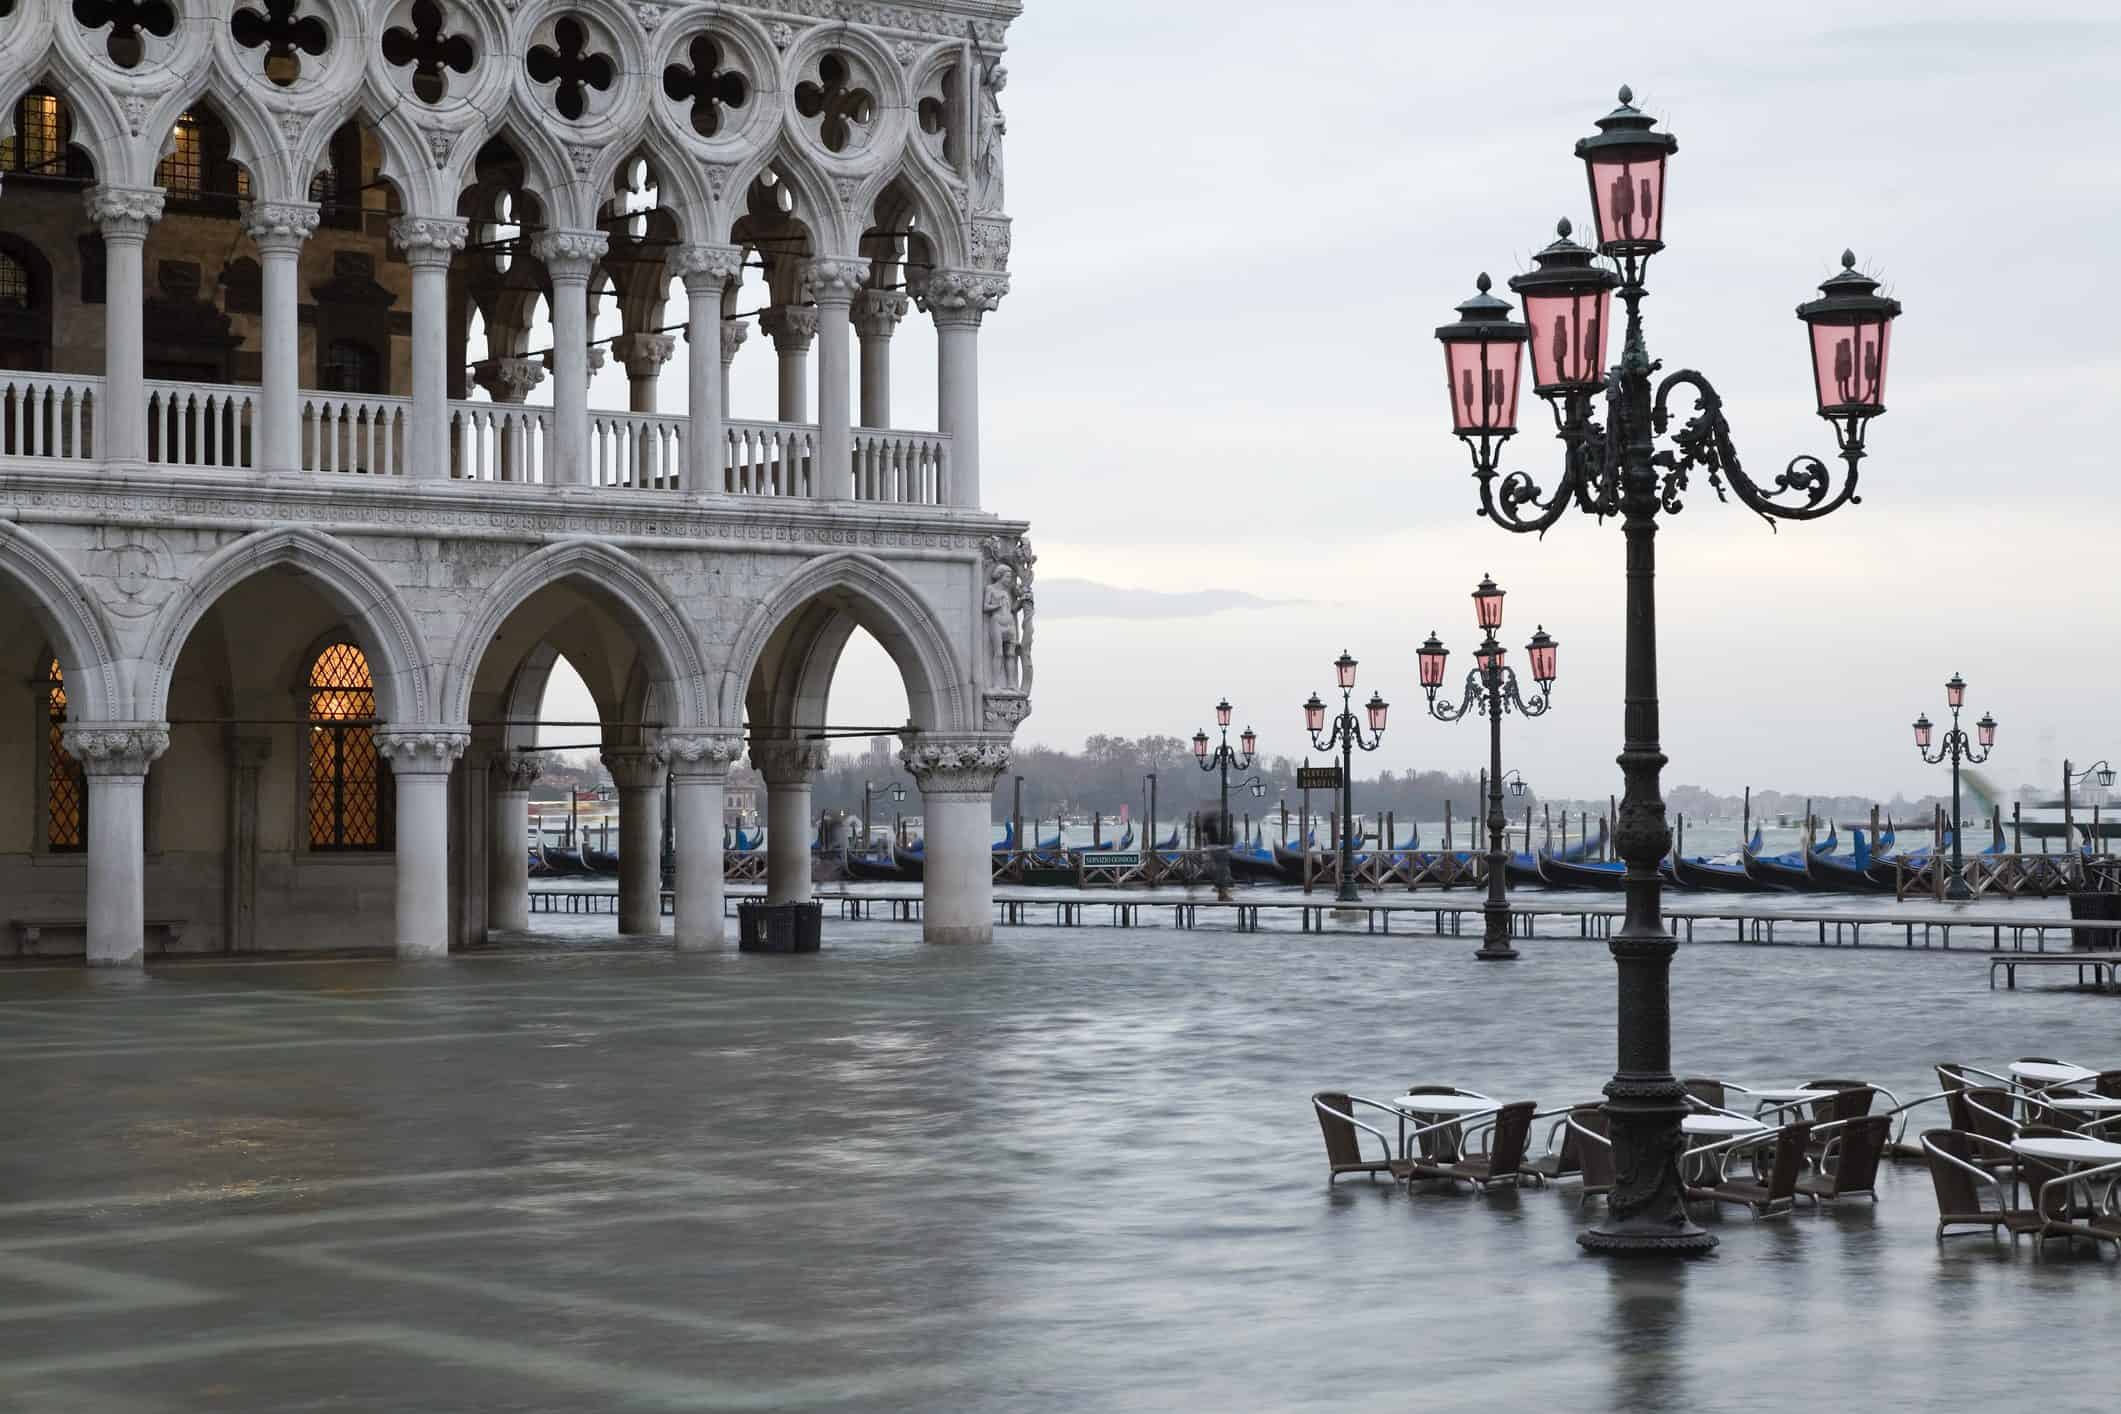 Inundaciones en Venecia